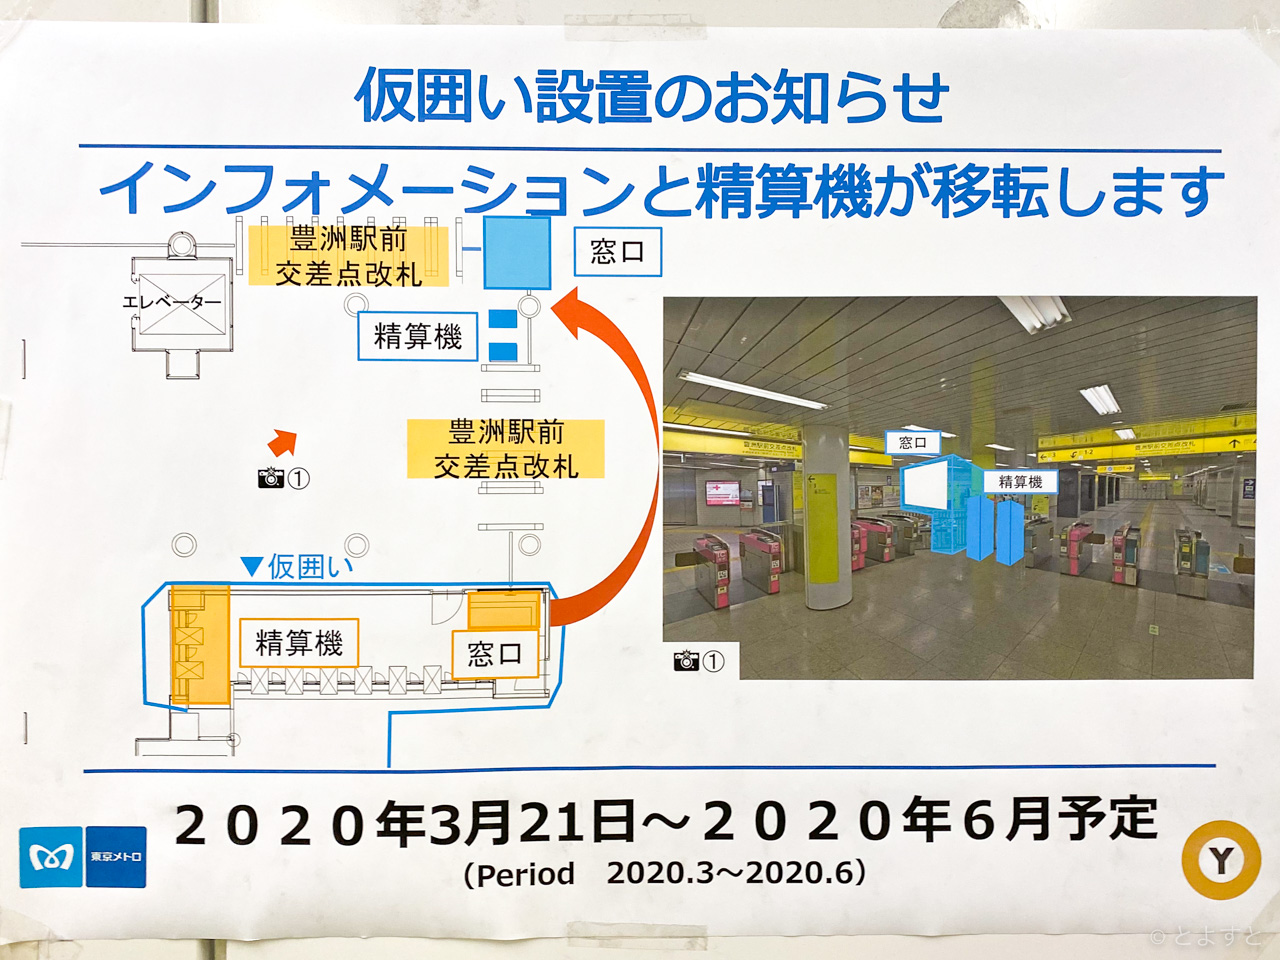 2020年6月、豊洲駅が改札口を工事して改札機が増えた！通行しやすく、ゆりかもめ乗換客との混雑緩和に期待